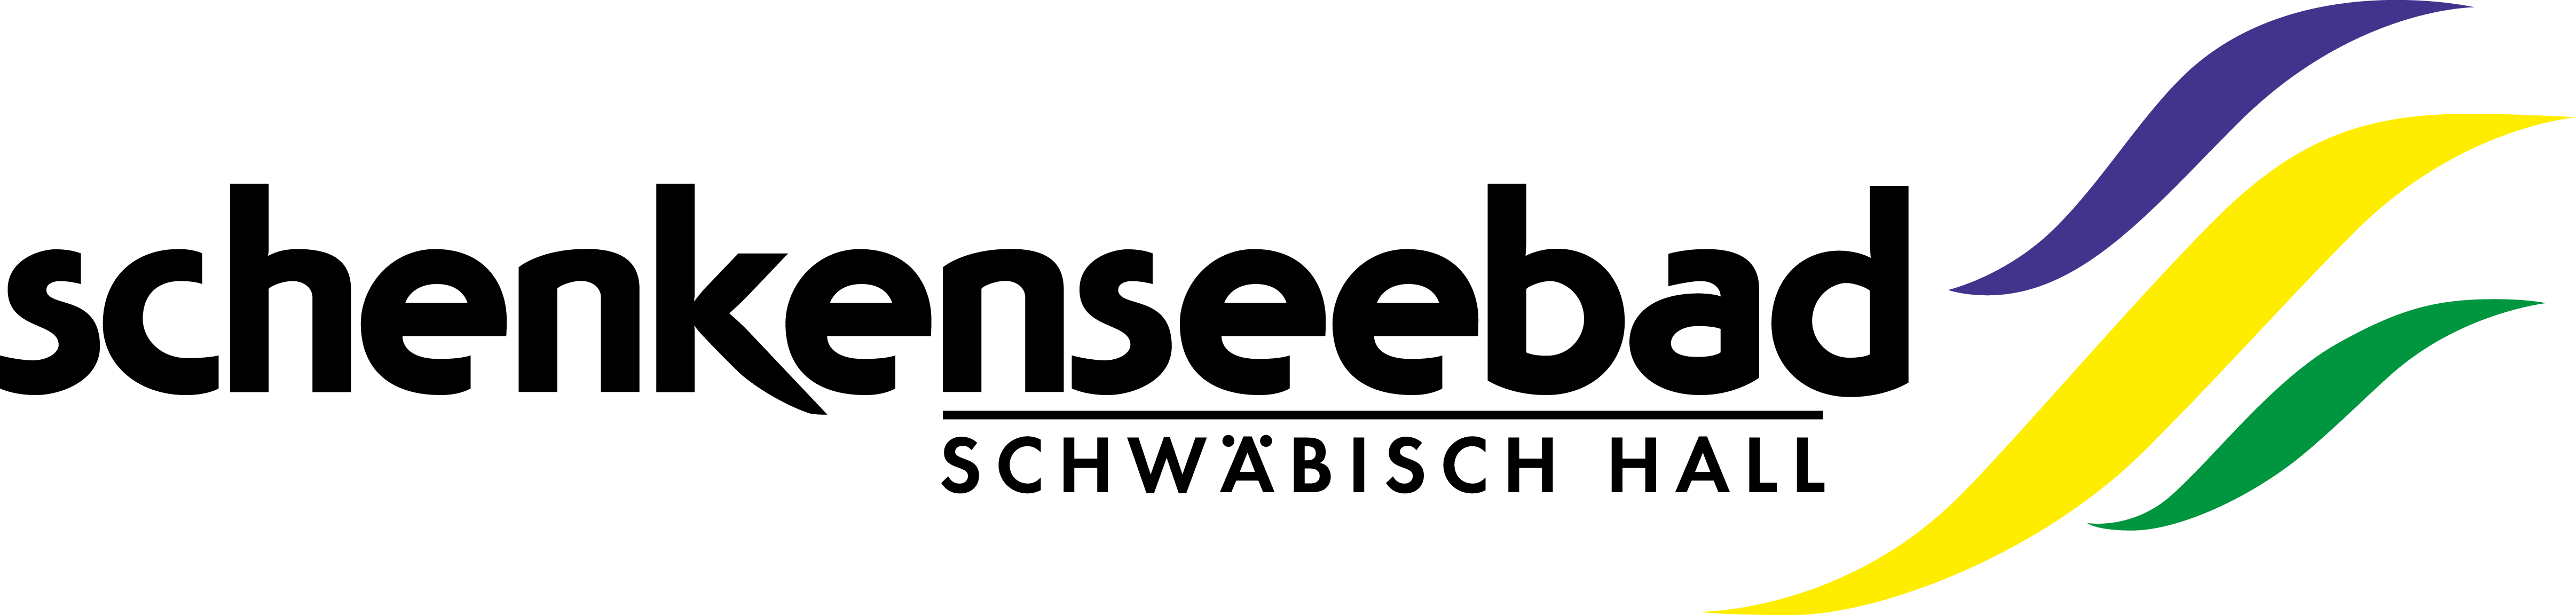 Logo Schenkenseebad